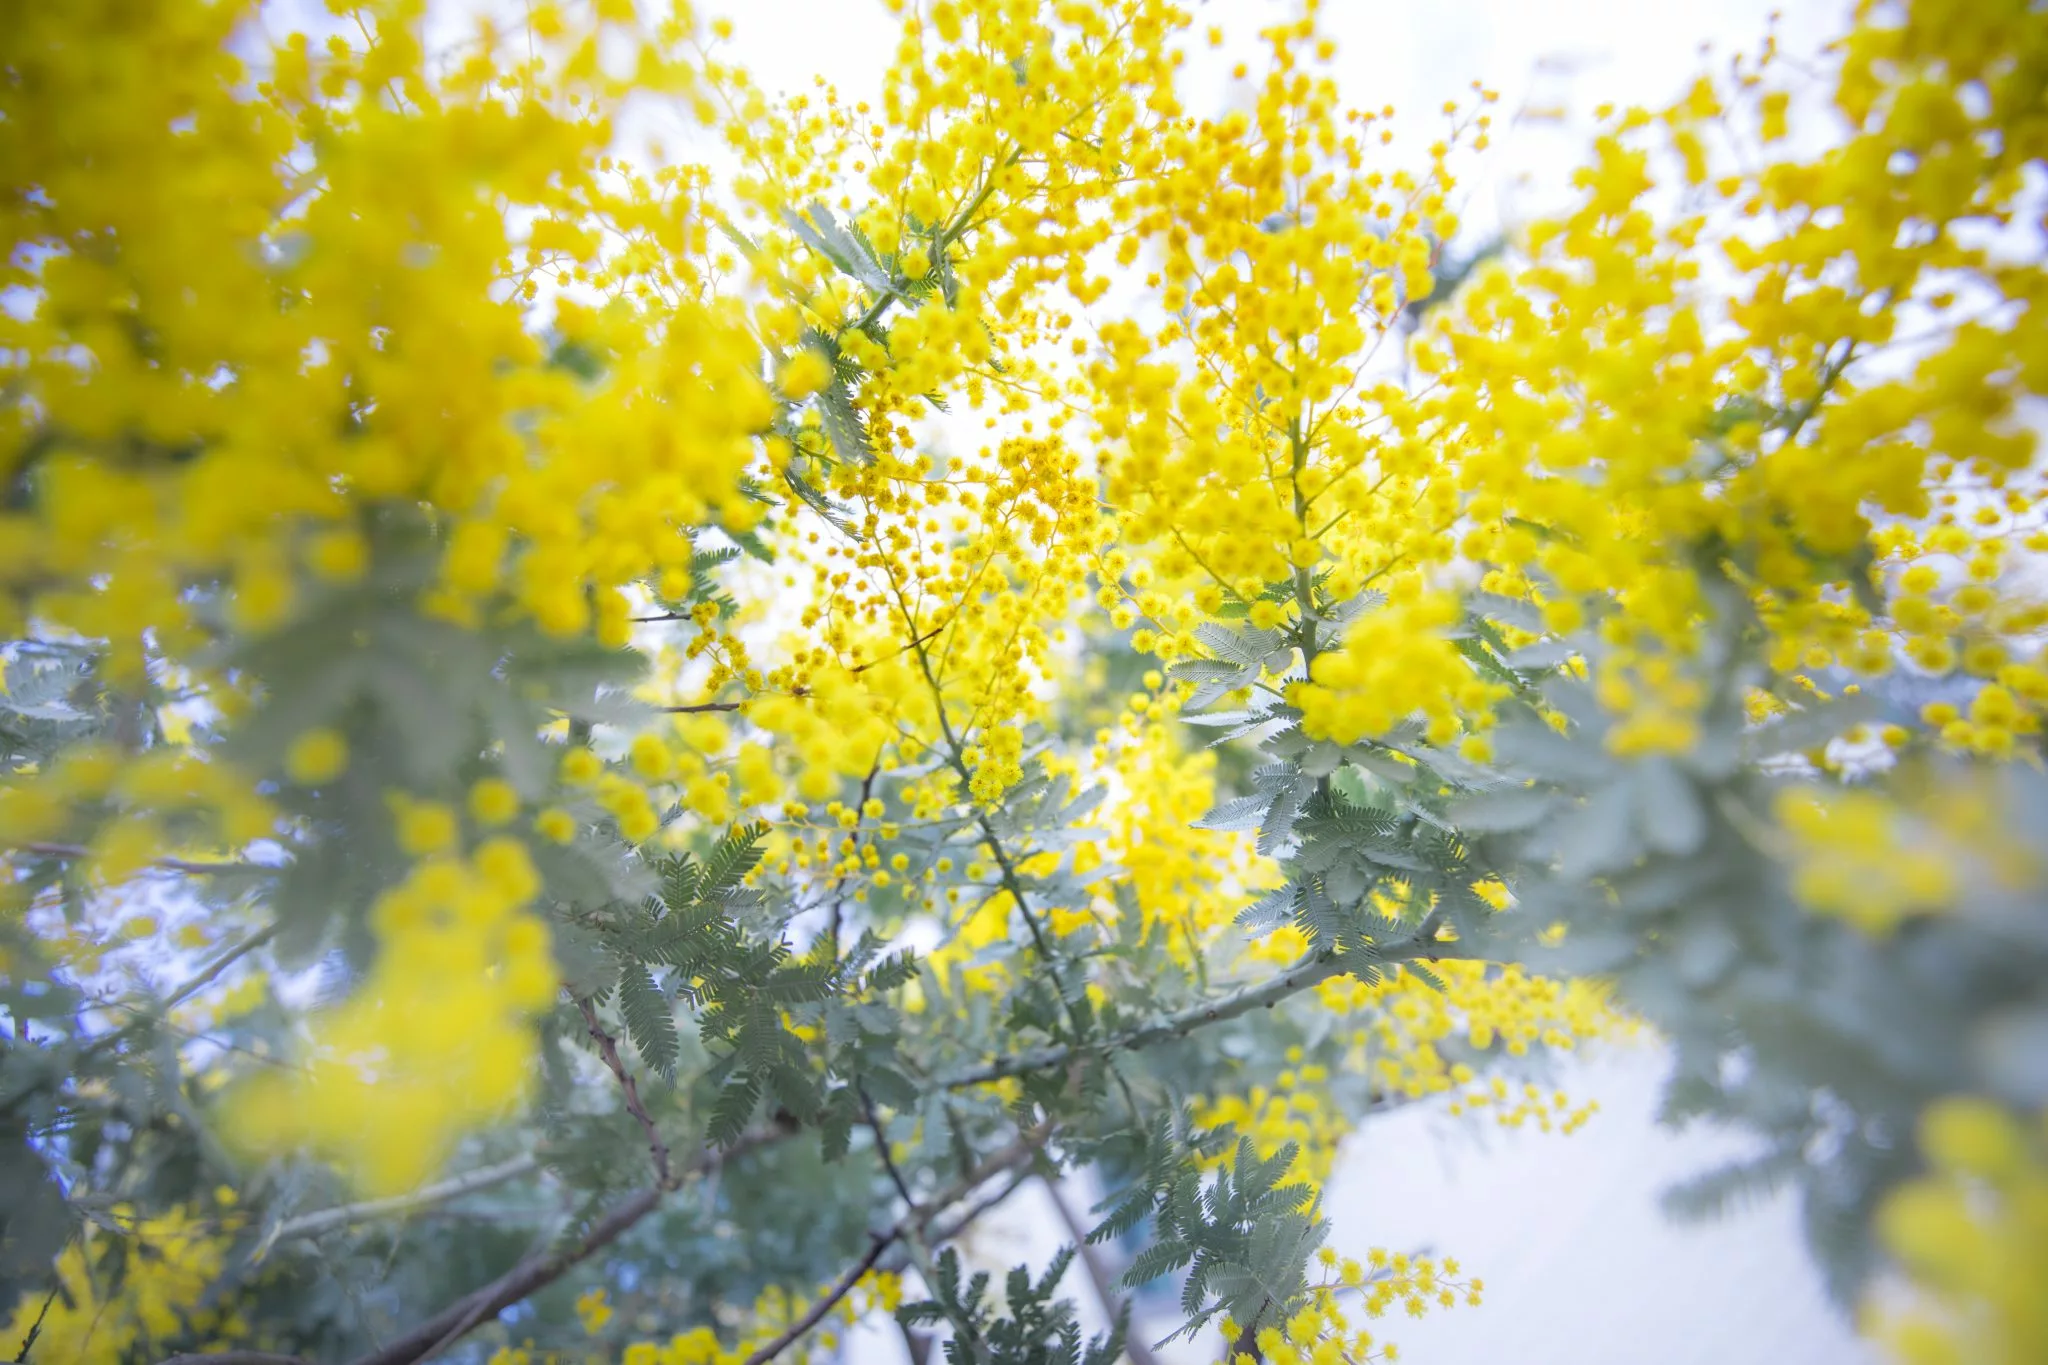 arbuste de mimosa dans son milieu naturel, fleurs utilisés chez votre artisan fleuriste pour composer des bouquets de saison